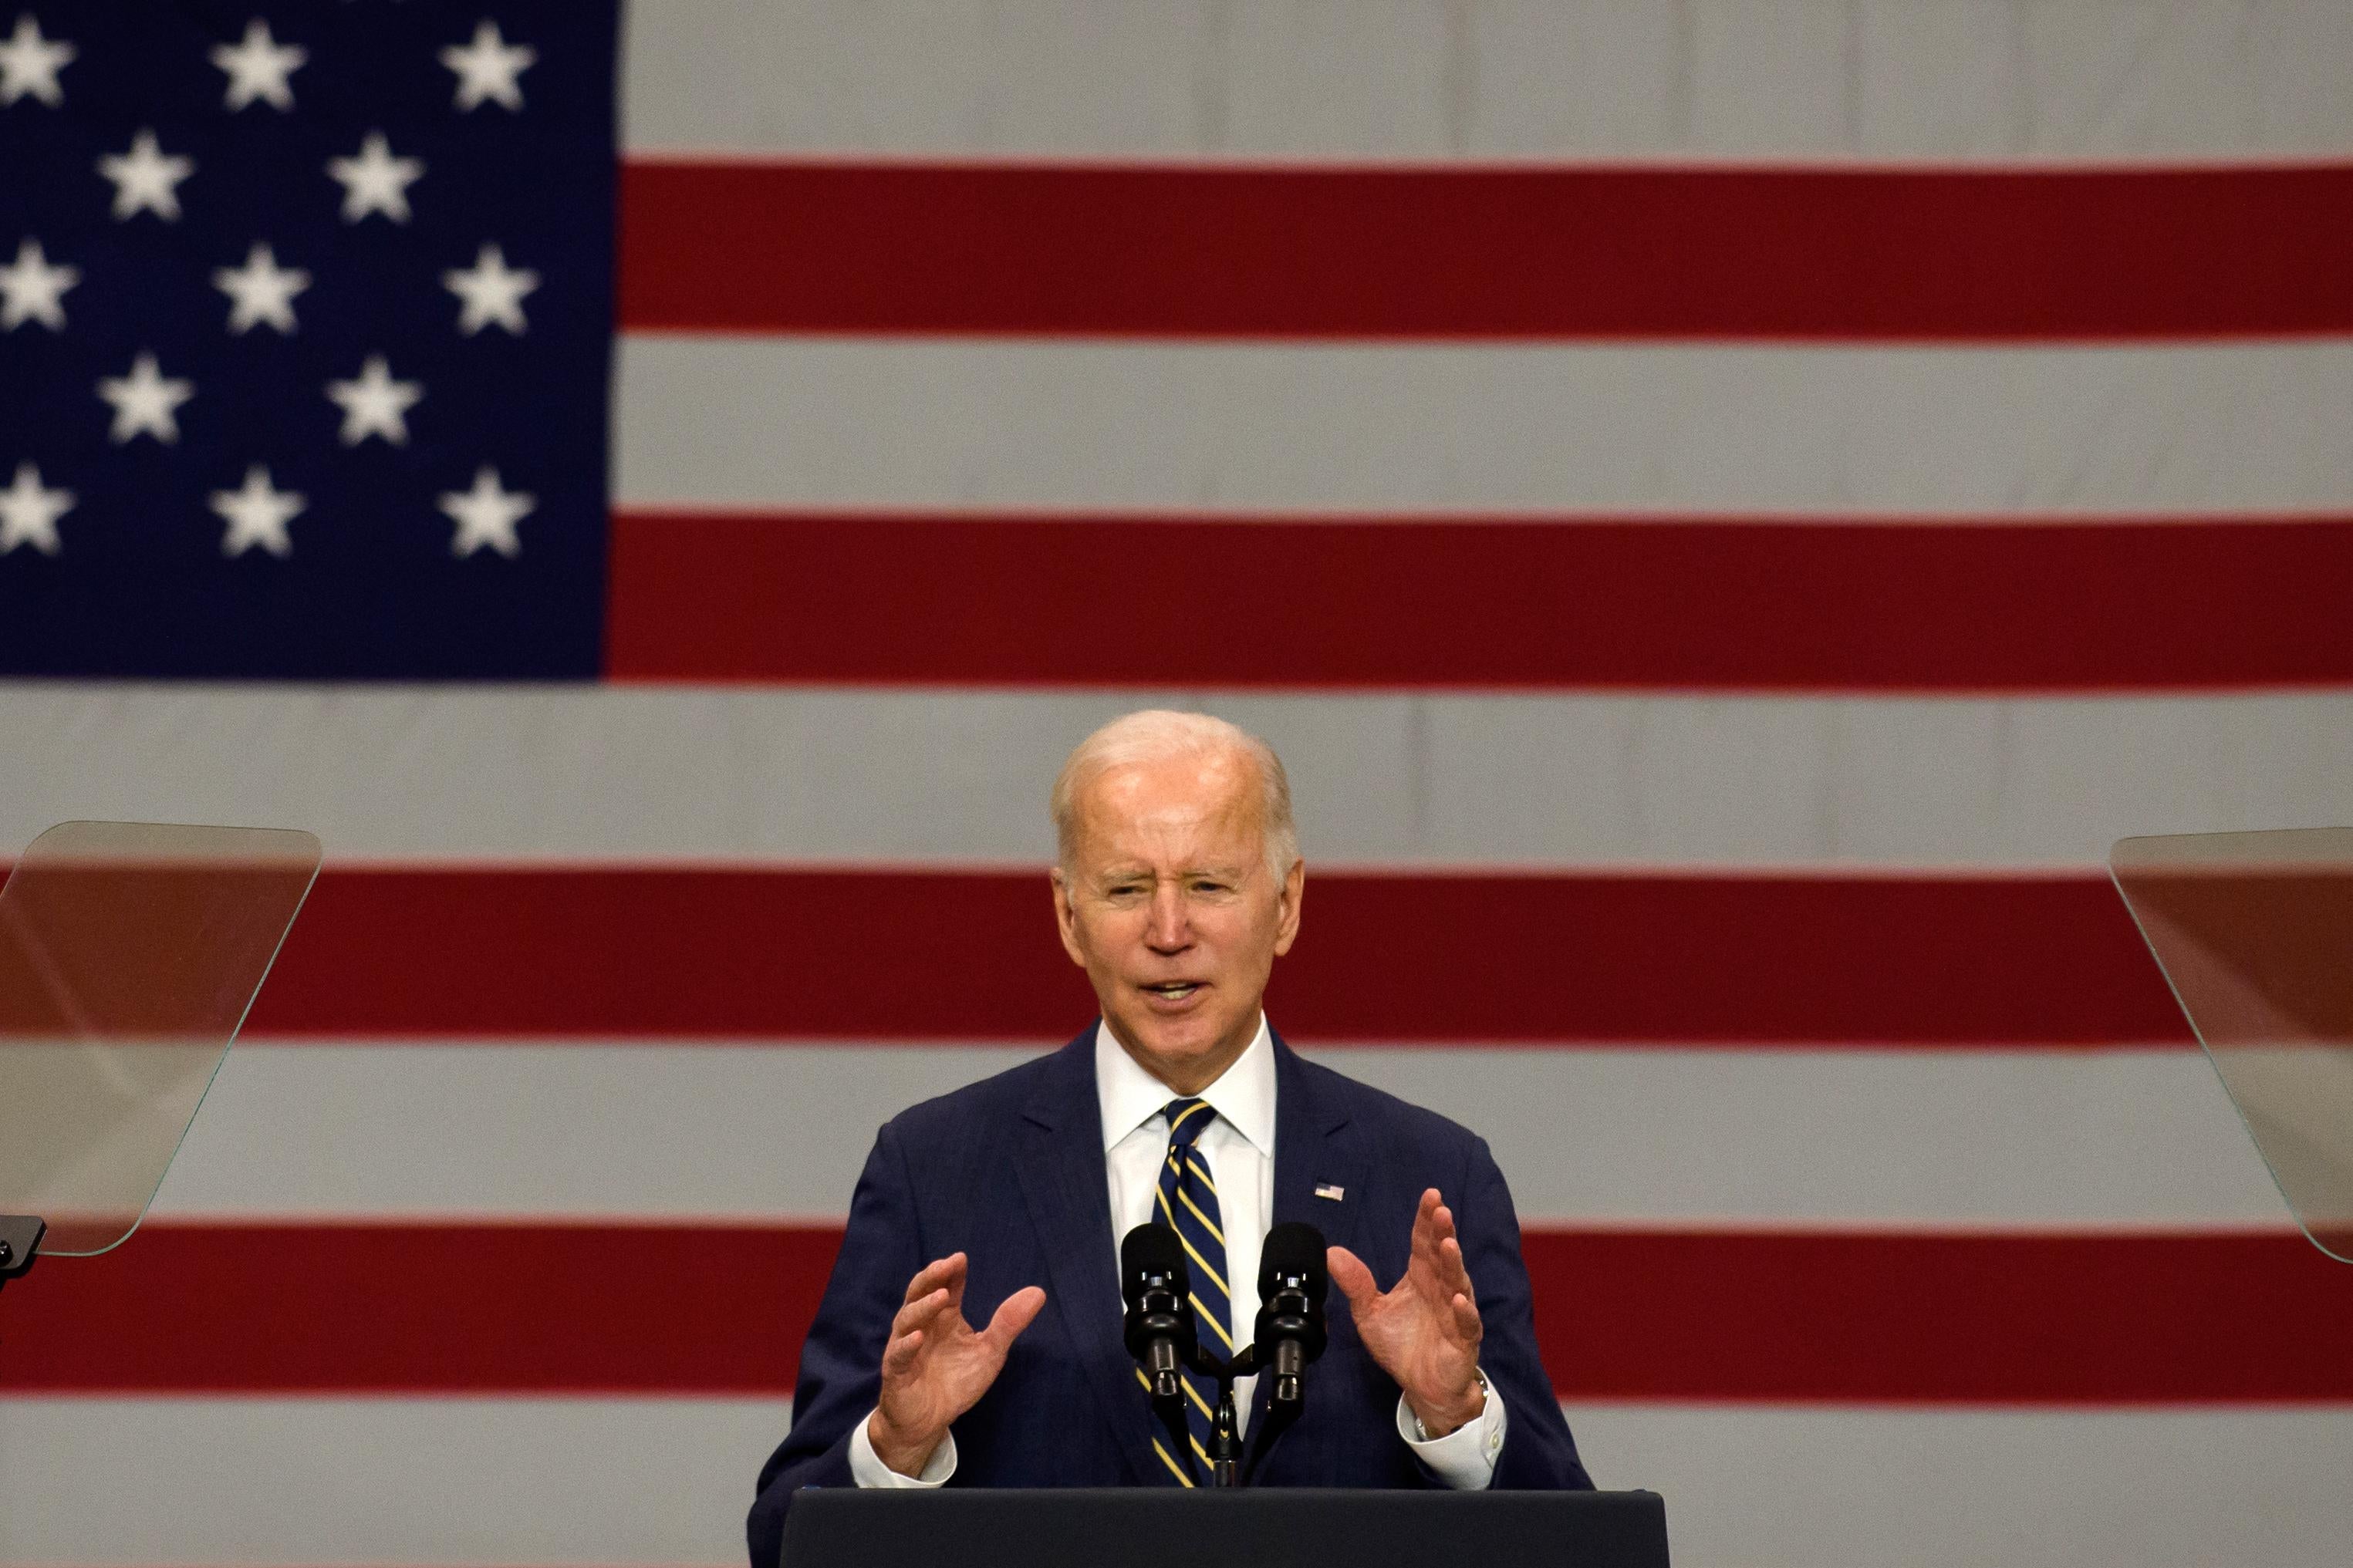 Joe Biden gestures in front of an American flag.